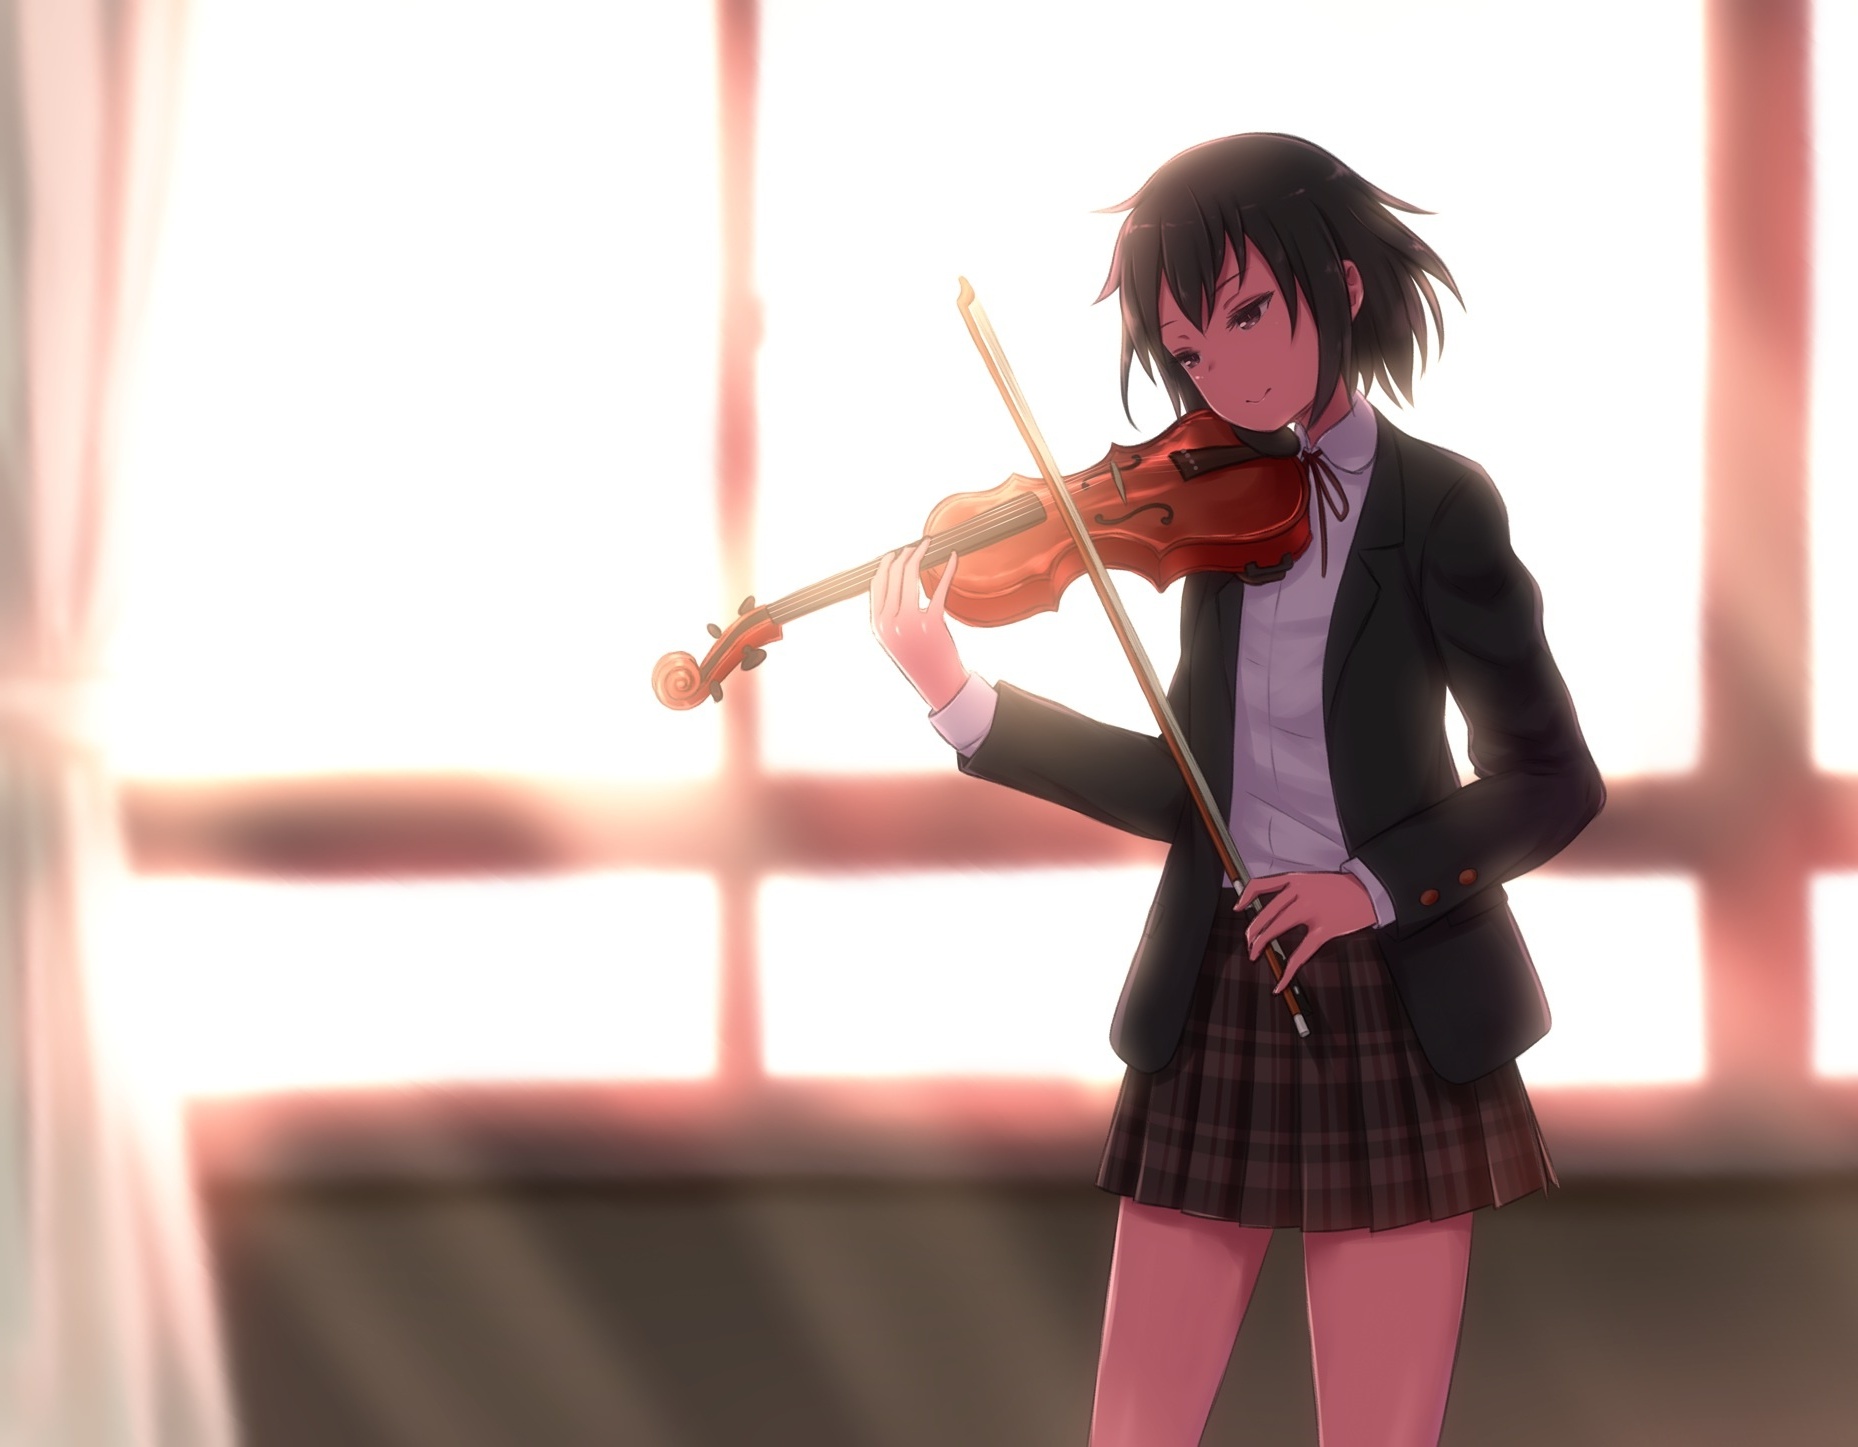 Wallpaper Anime Girl, Violin, Instrument, School Uniform, Sunlight:1858x1447